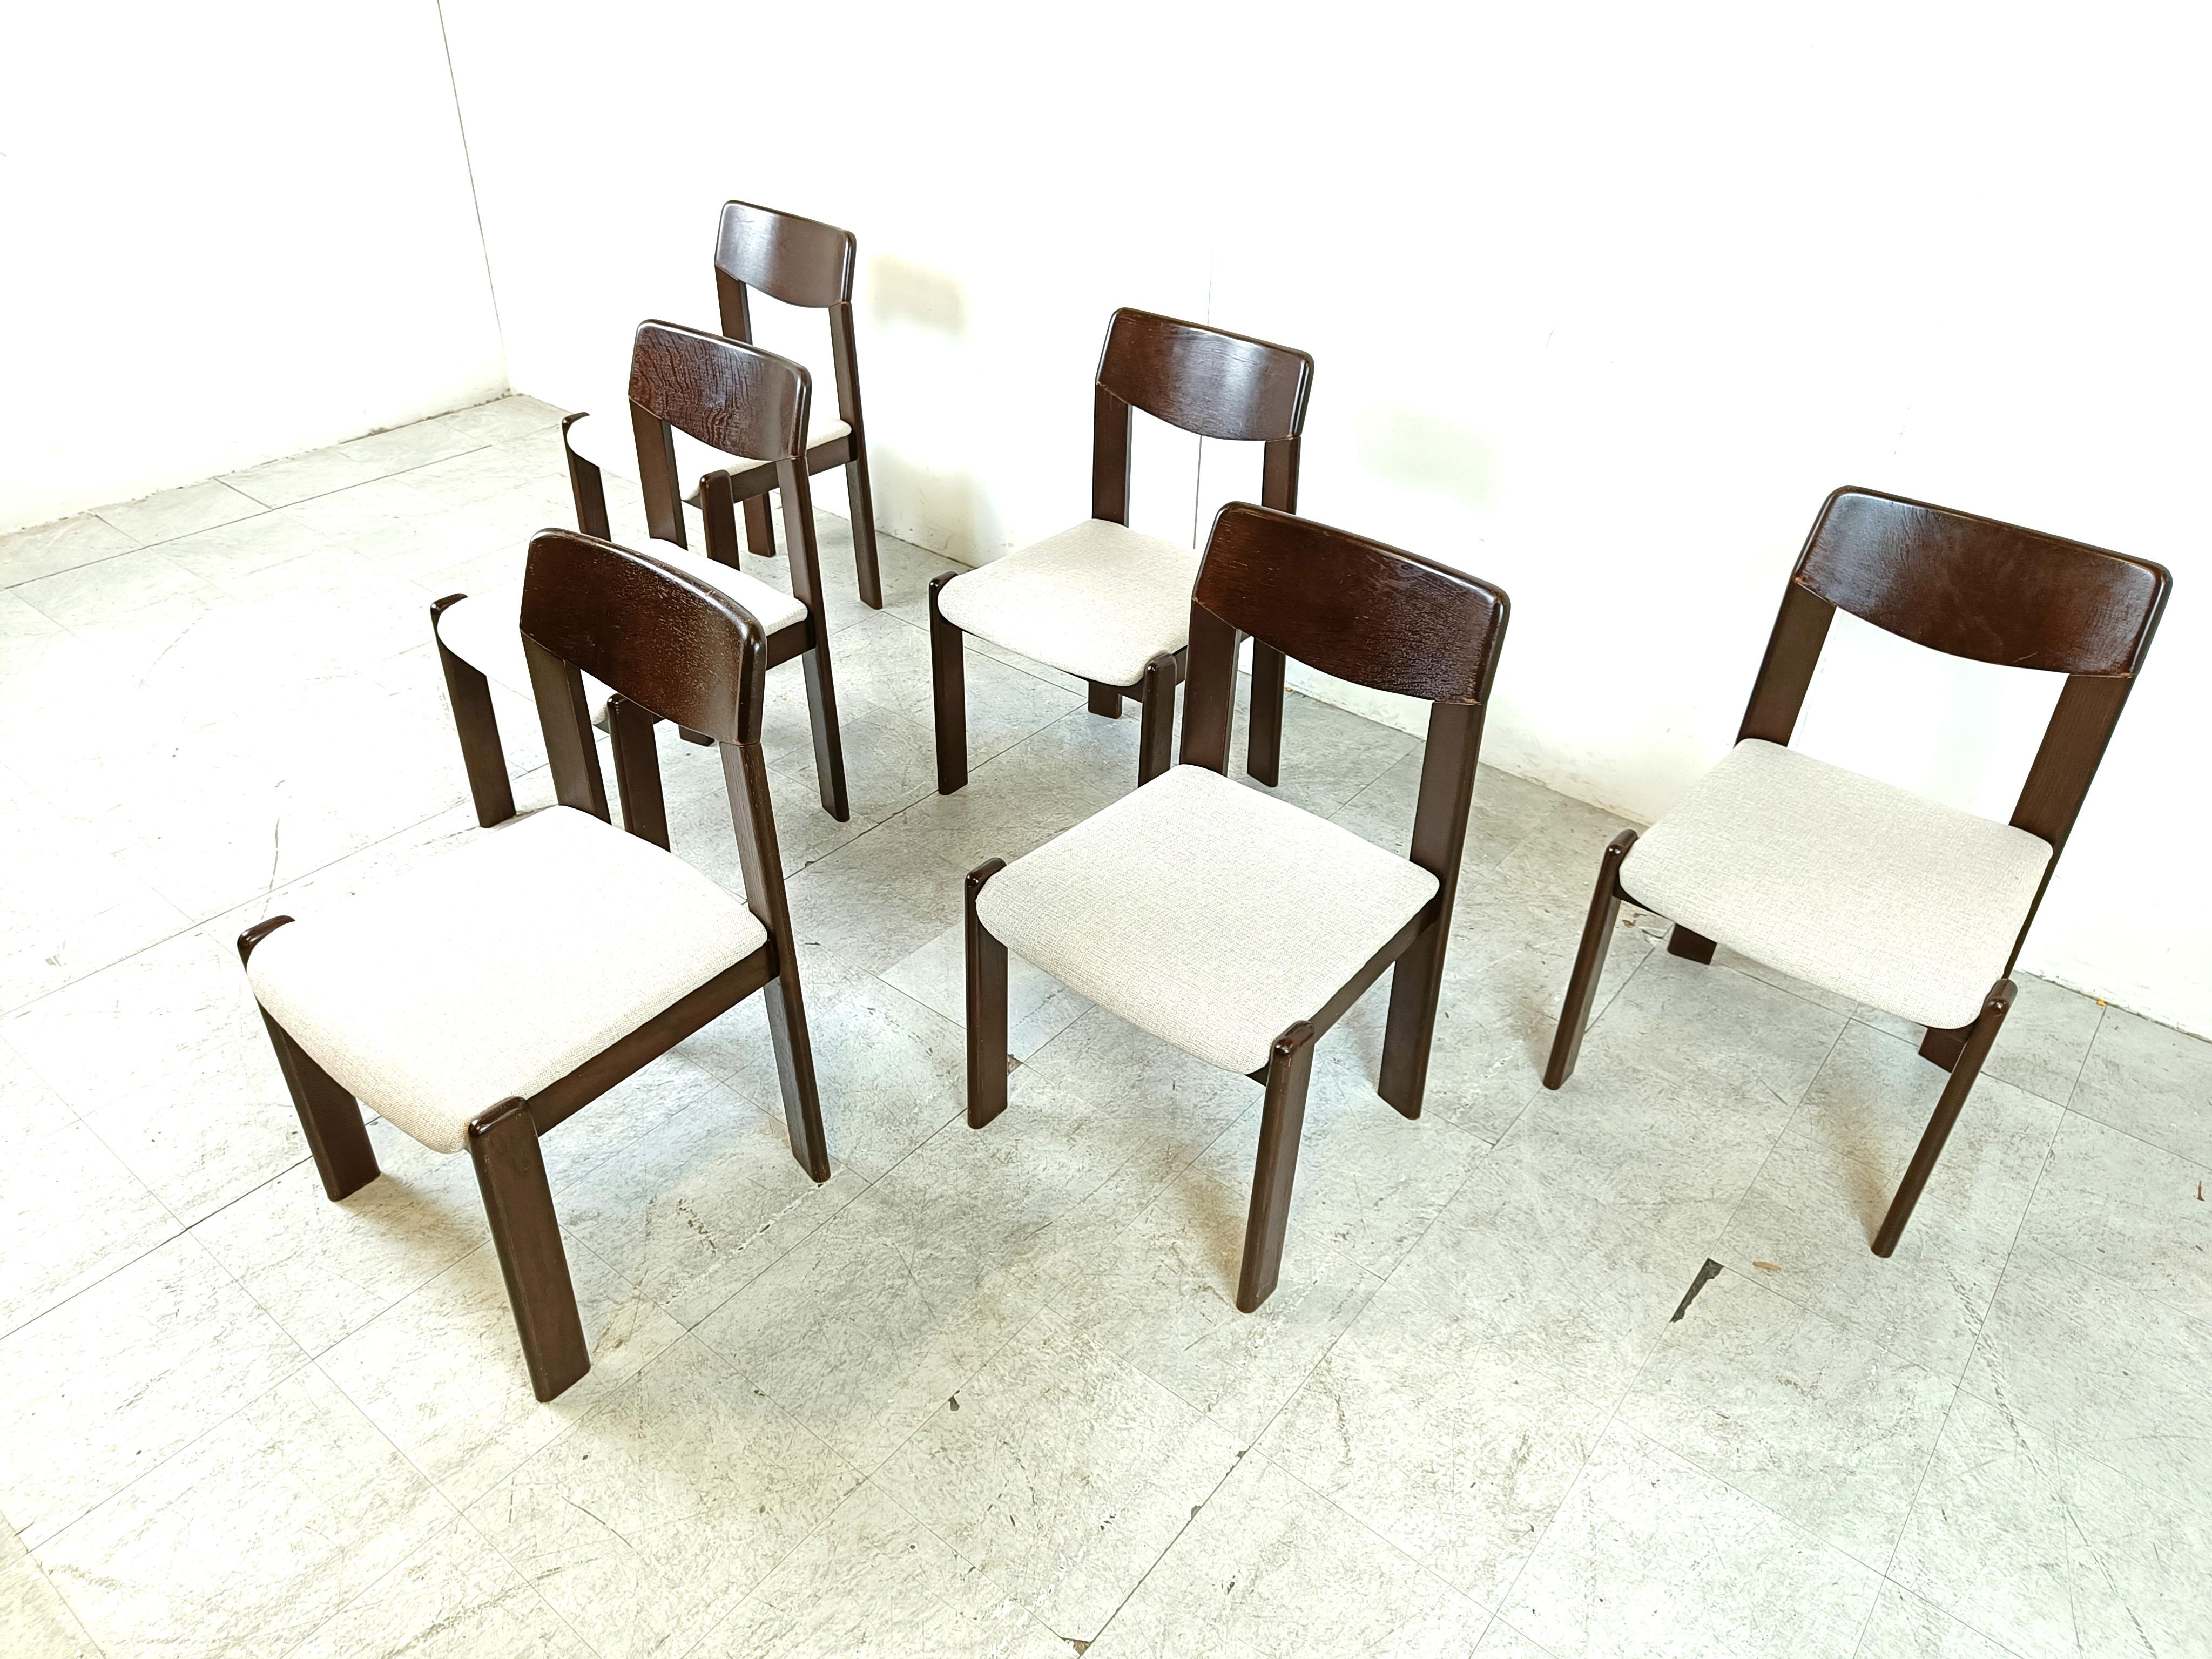 Esszimmerstühle im brutalistischen Stil, 6er-Set, 1970er-Jahre (Ende des 20. Jahrhunderts)